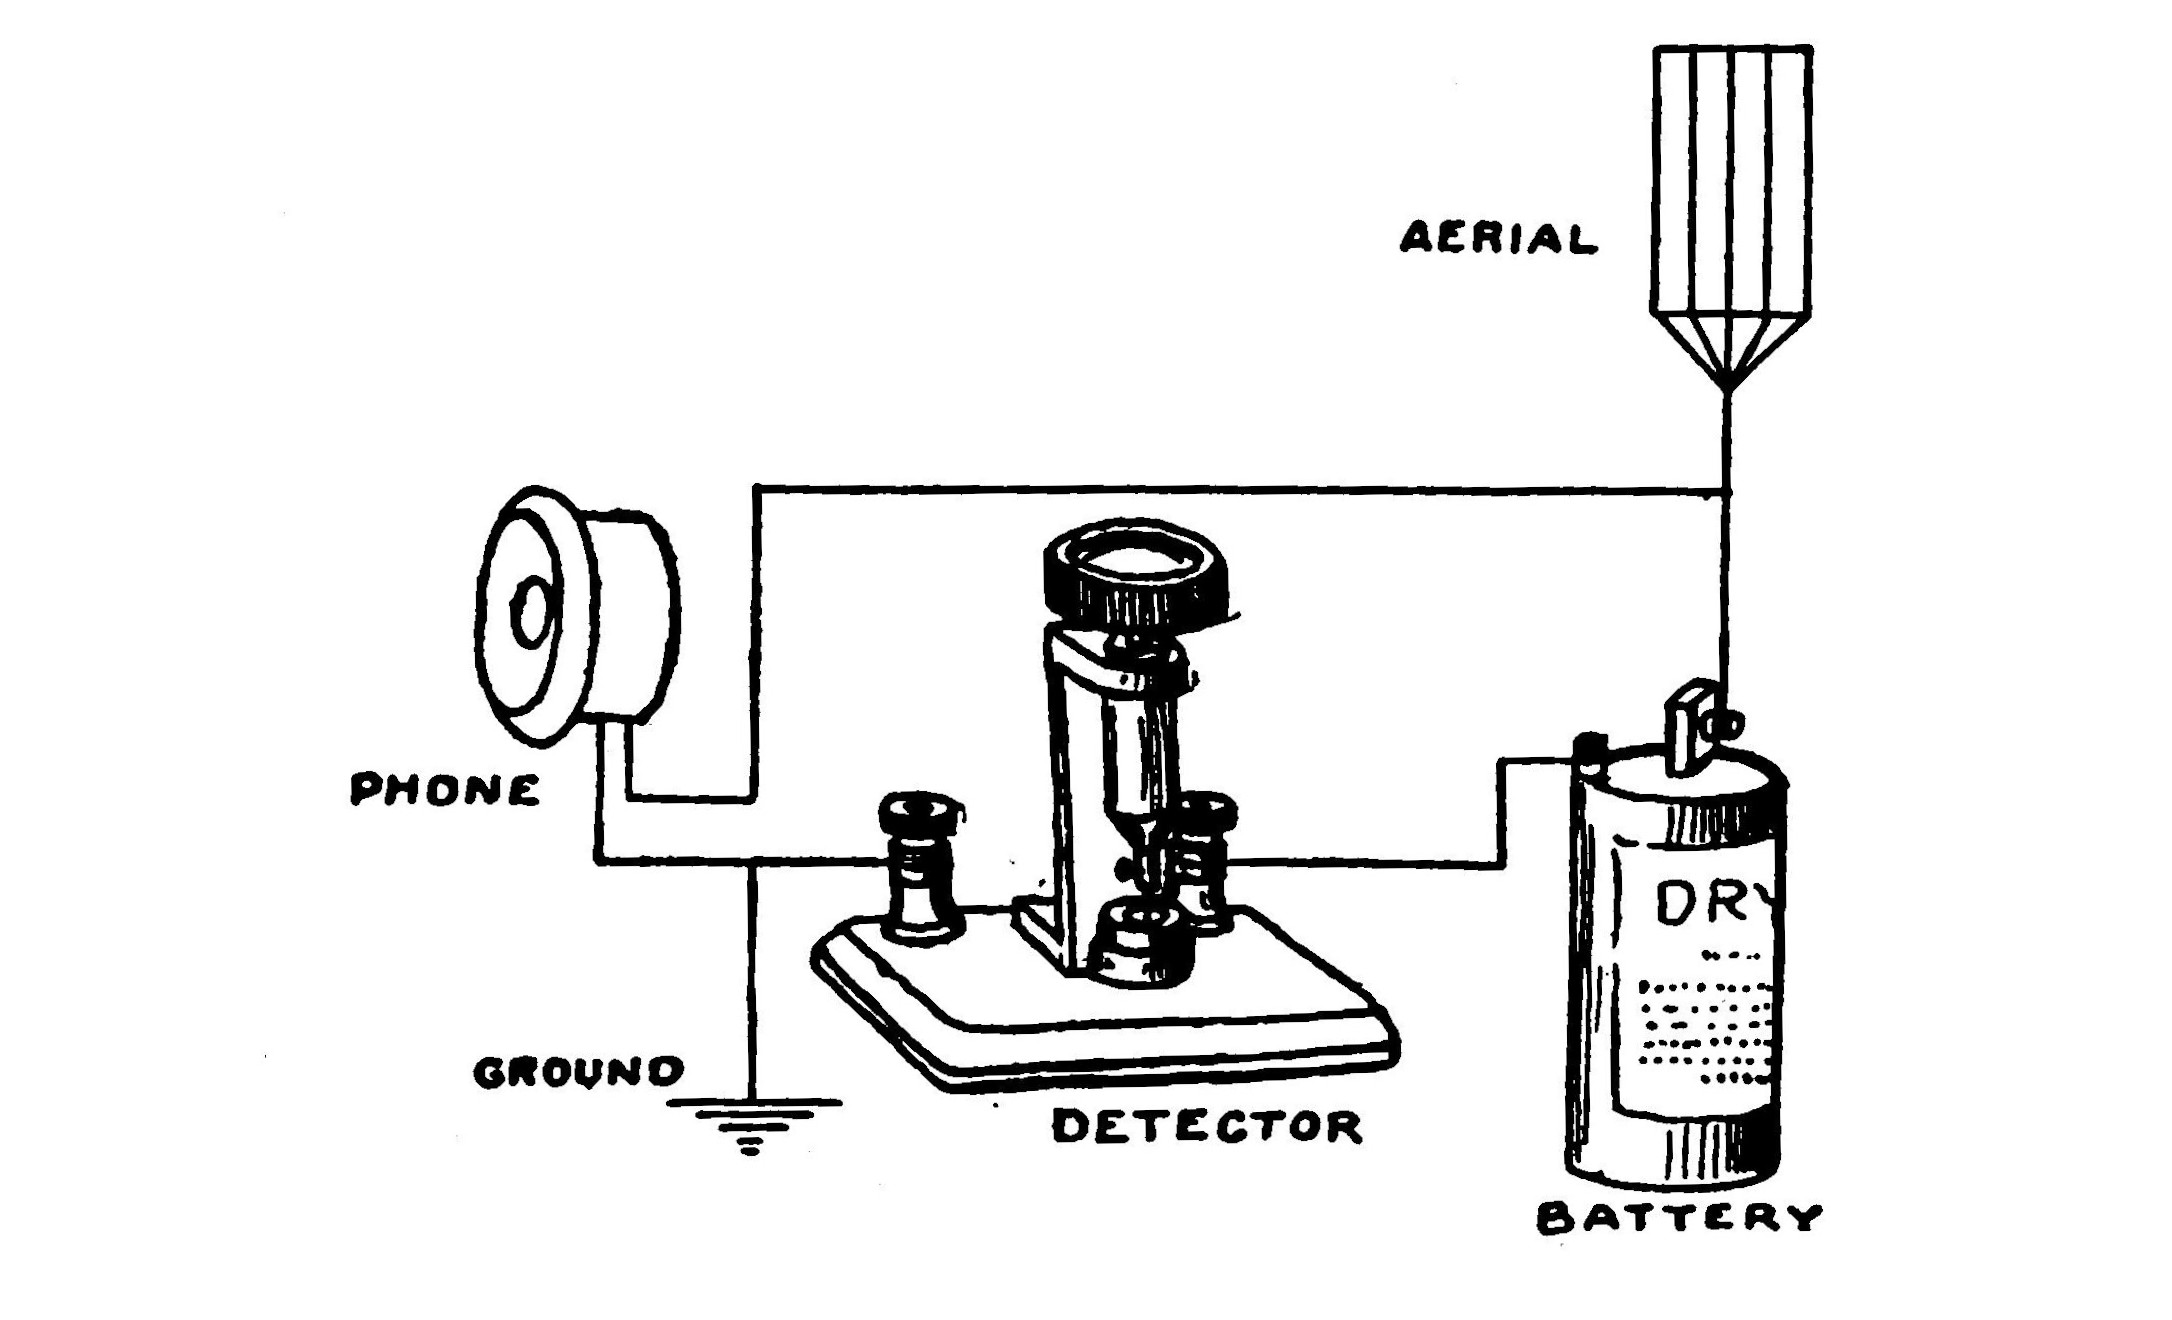 FIG. 73.—Electrolytic detector in circuit.